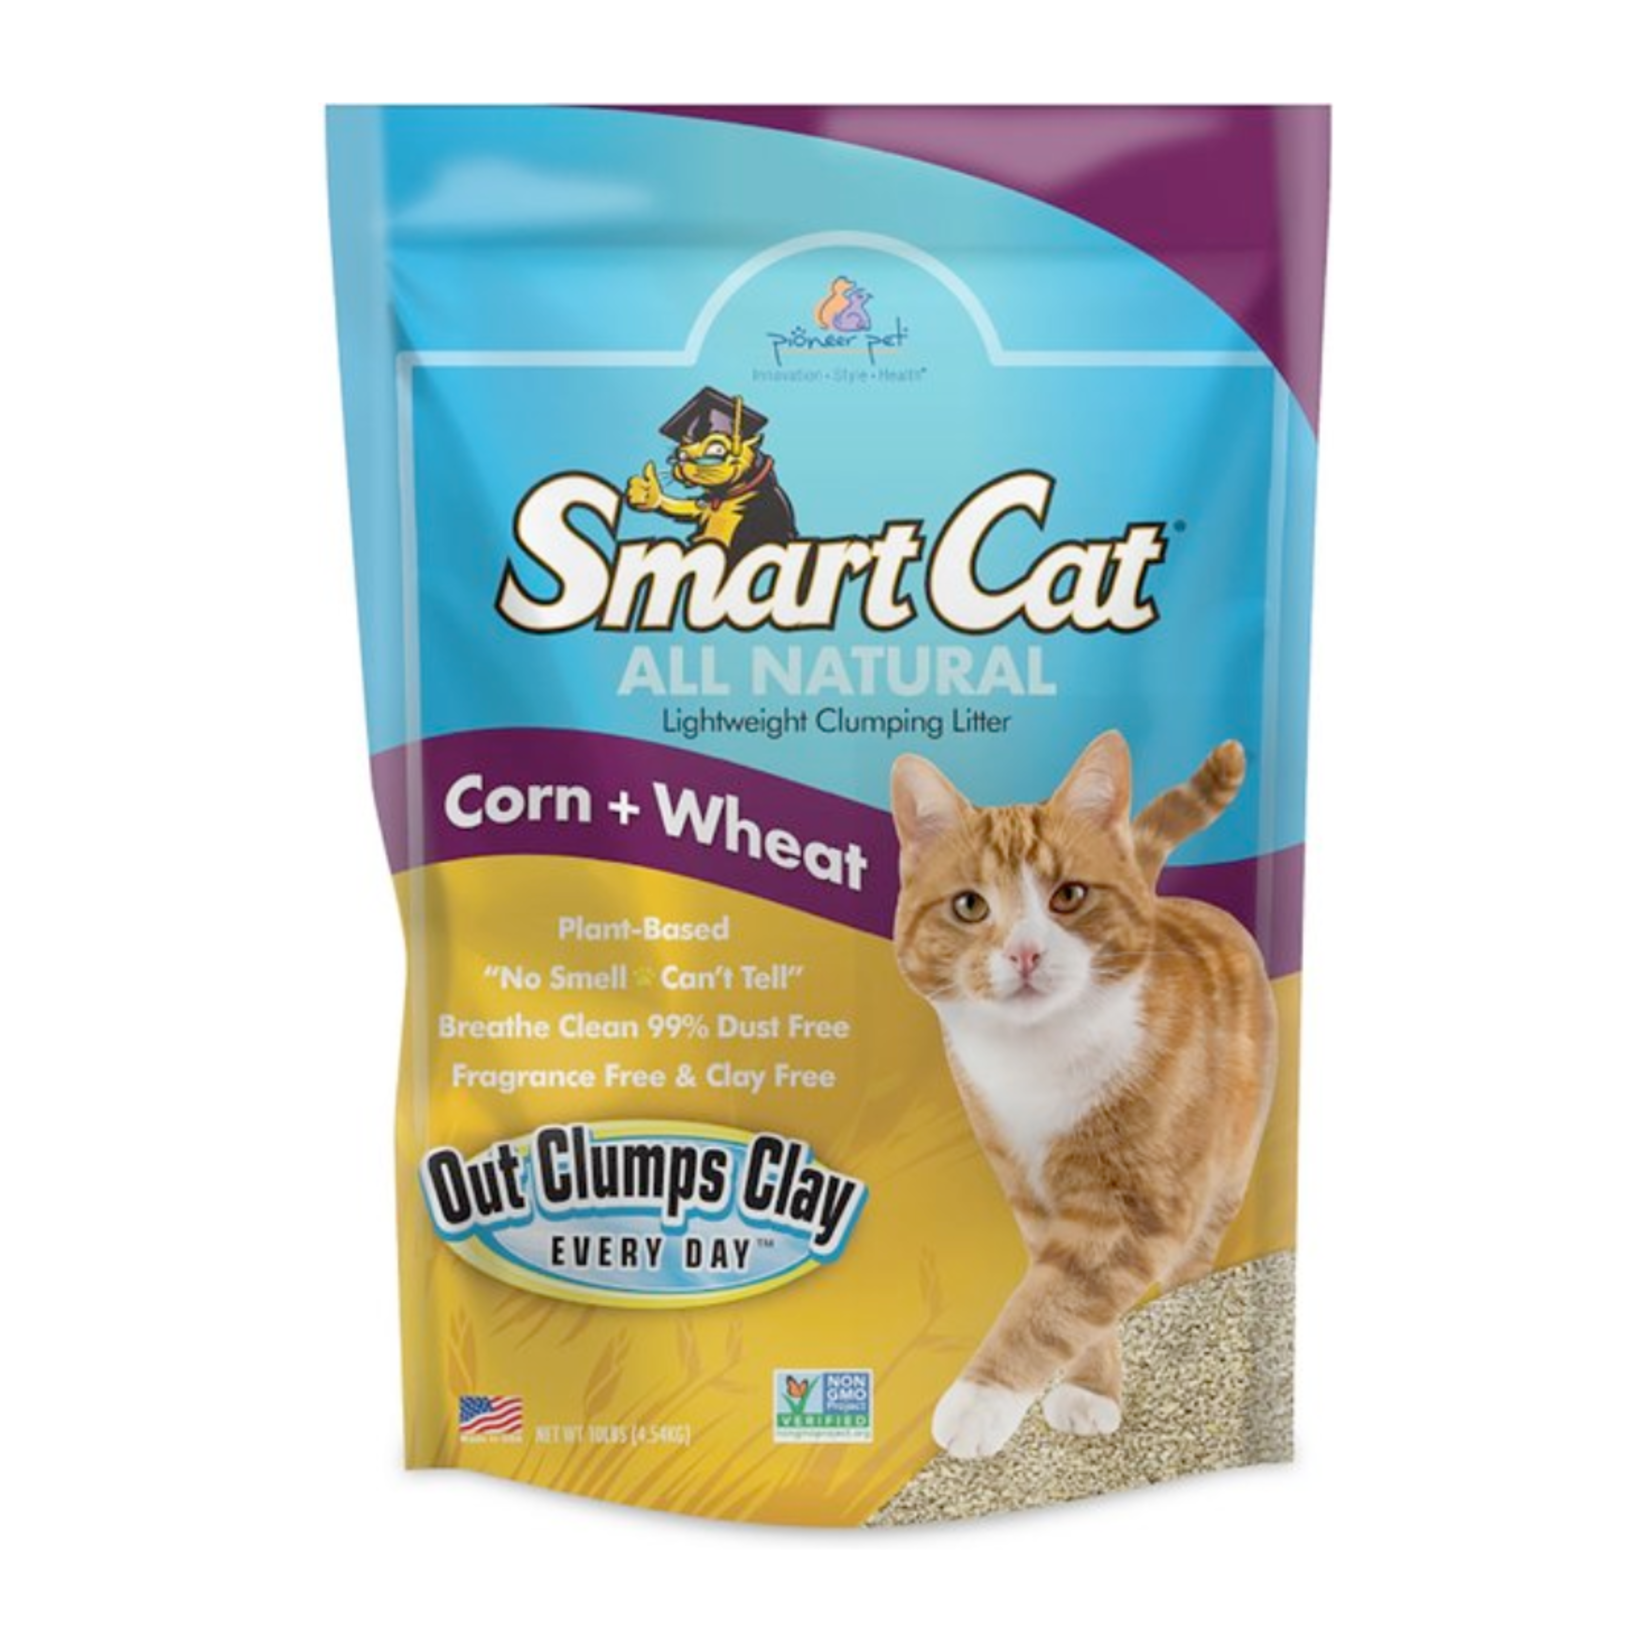 Smart Cat / Pioneer Pet Corn + Wheat Natural Unscented Lightweight Clumping Litter - Smart Cat